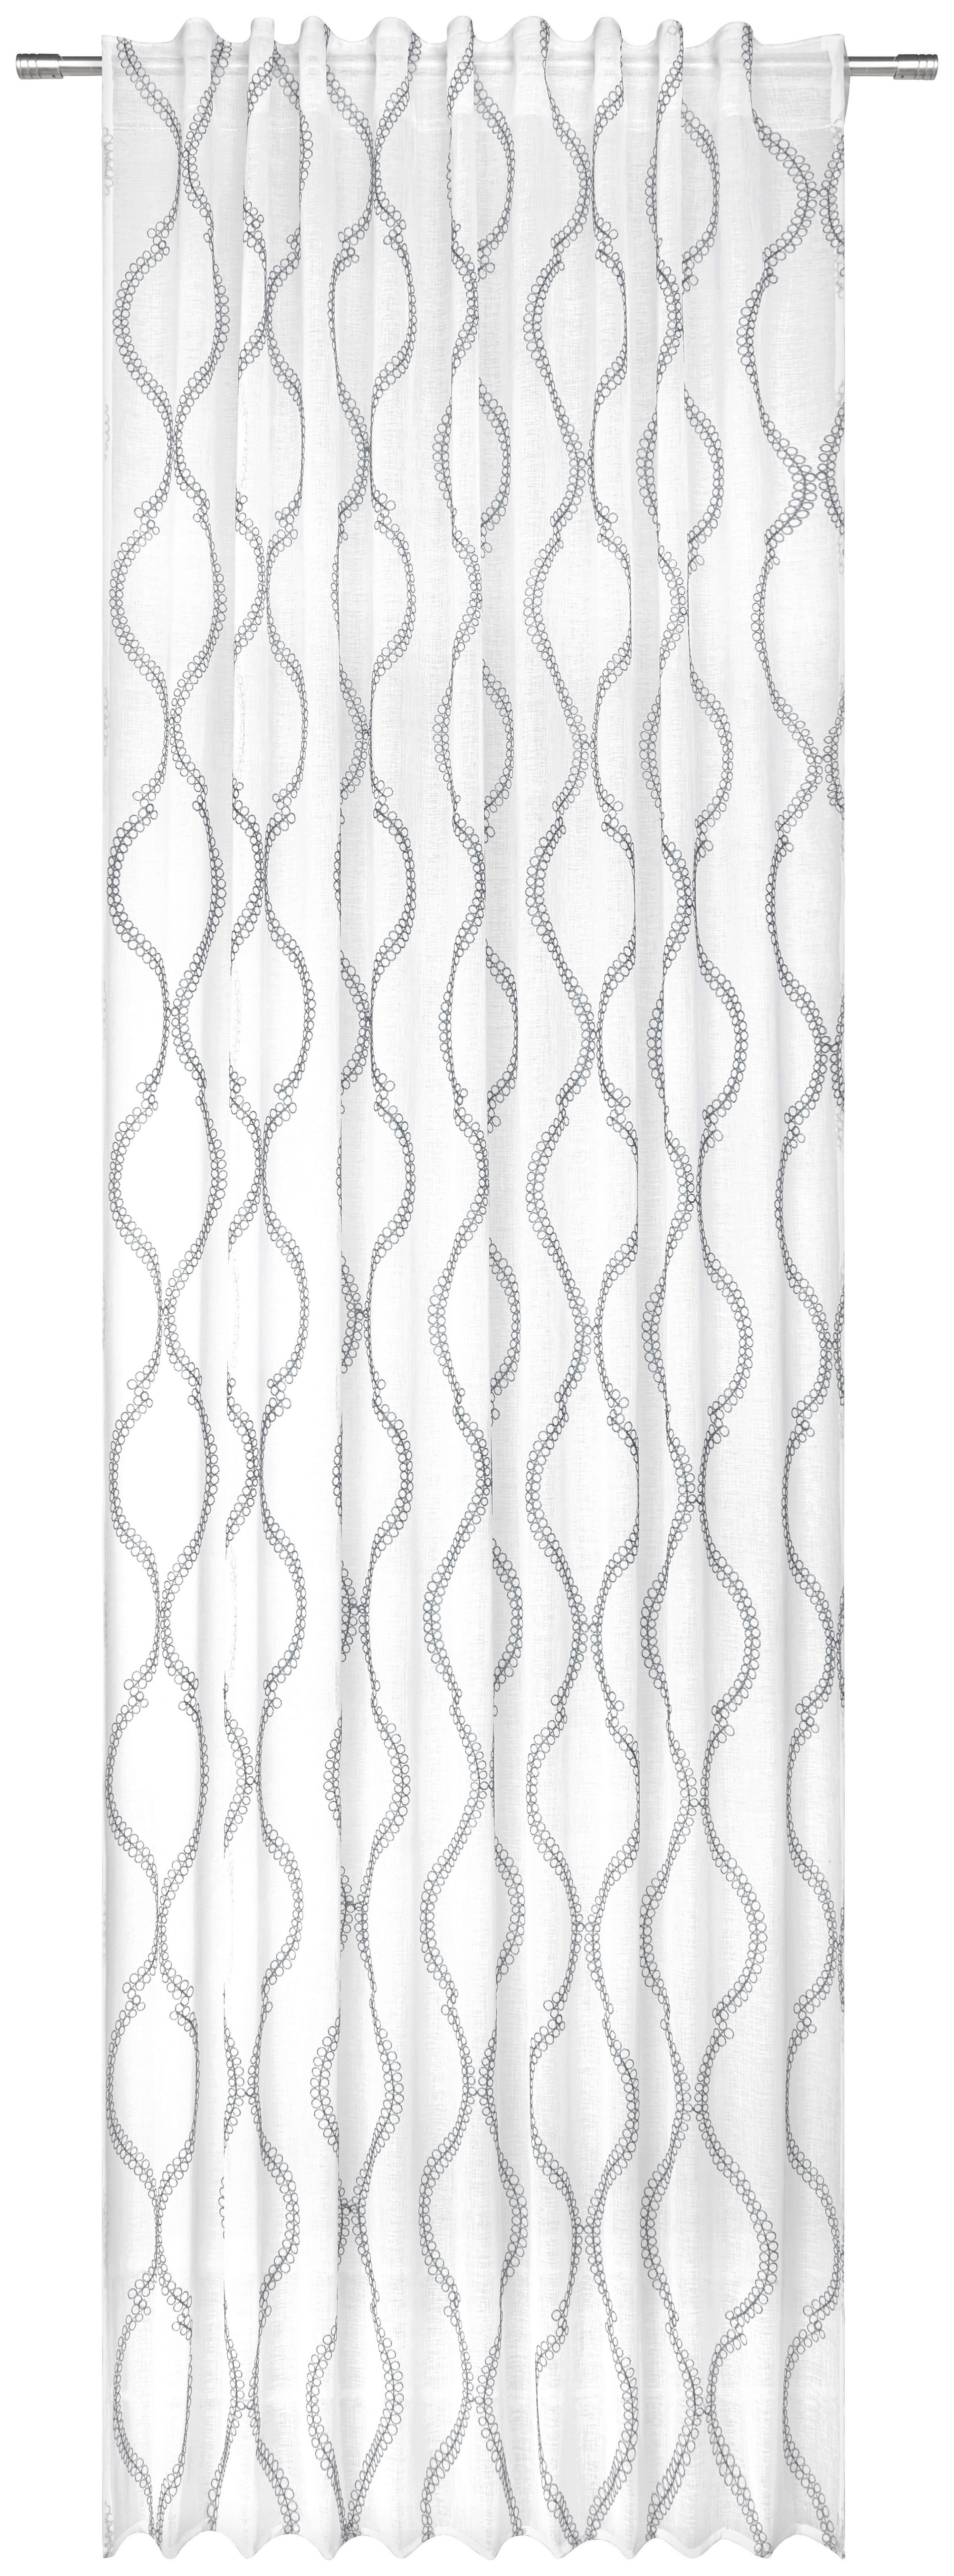 Gotova Zavjesa Orie - siva, Modern, tekstil (135/255cm) - Modern Living